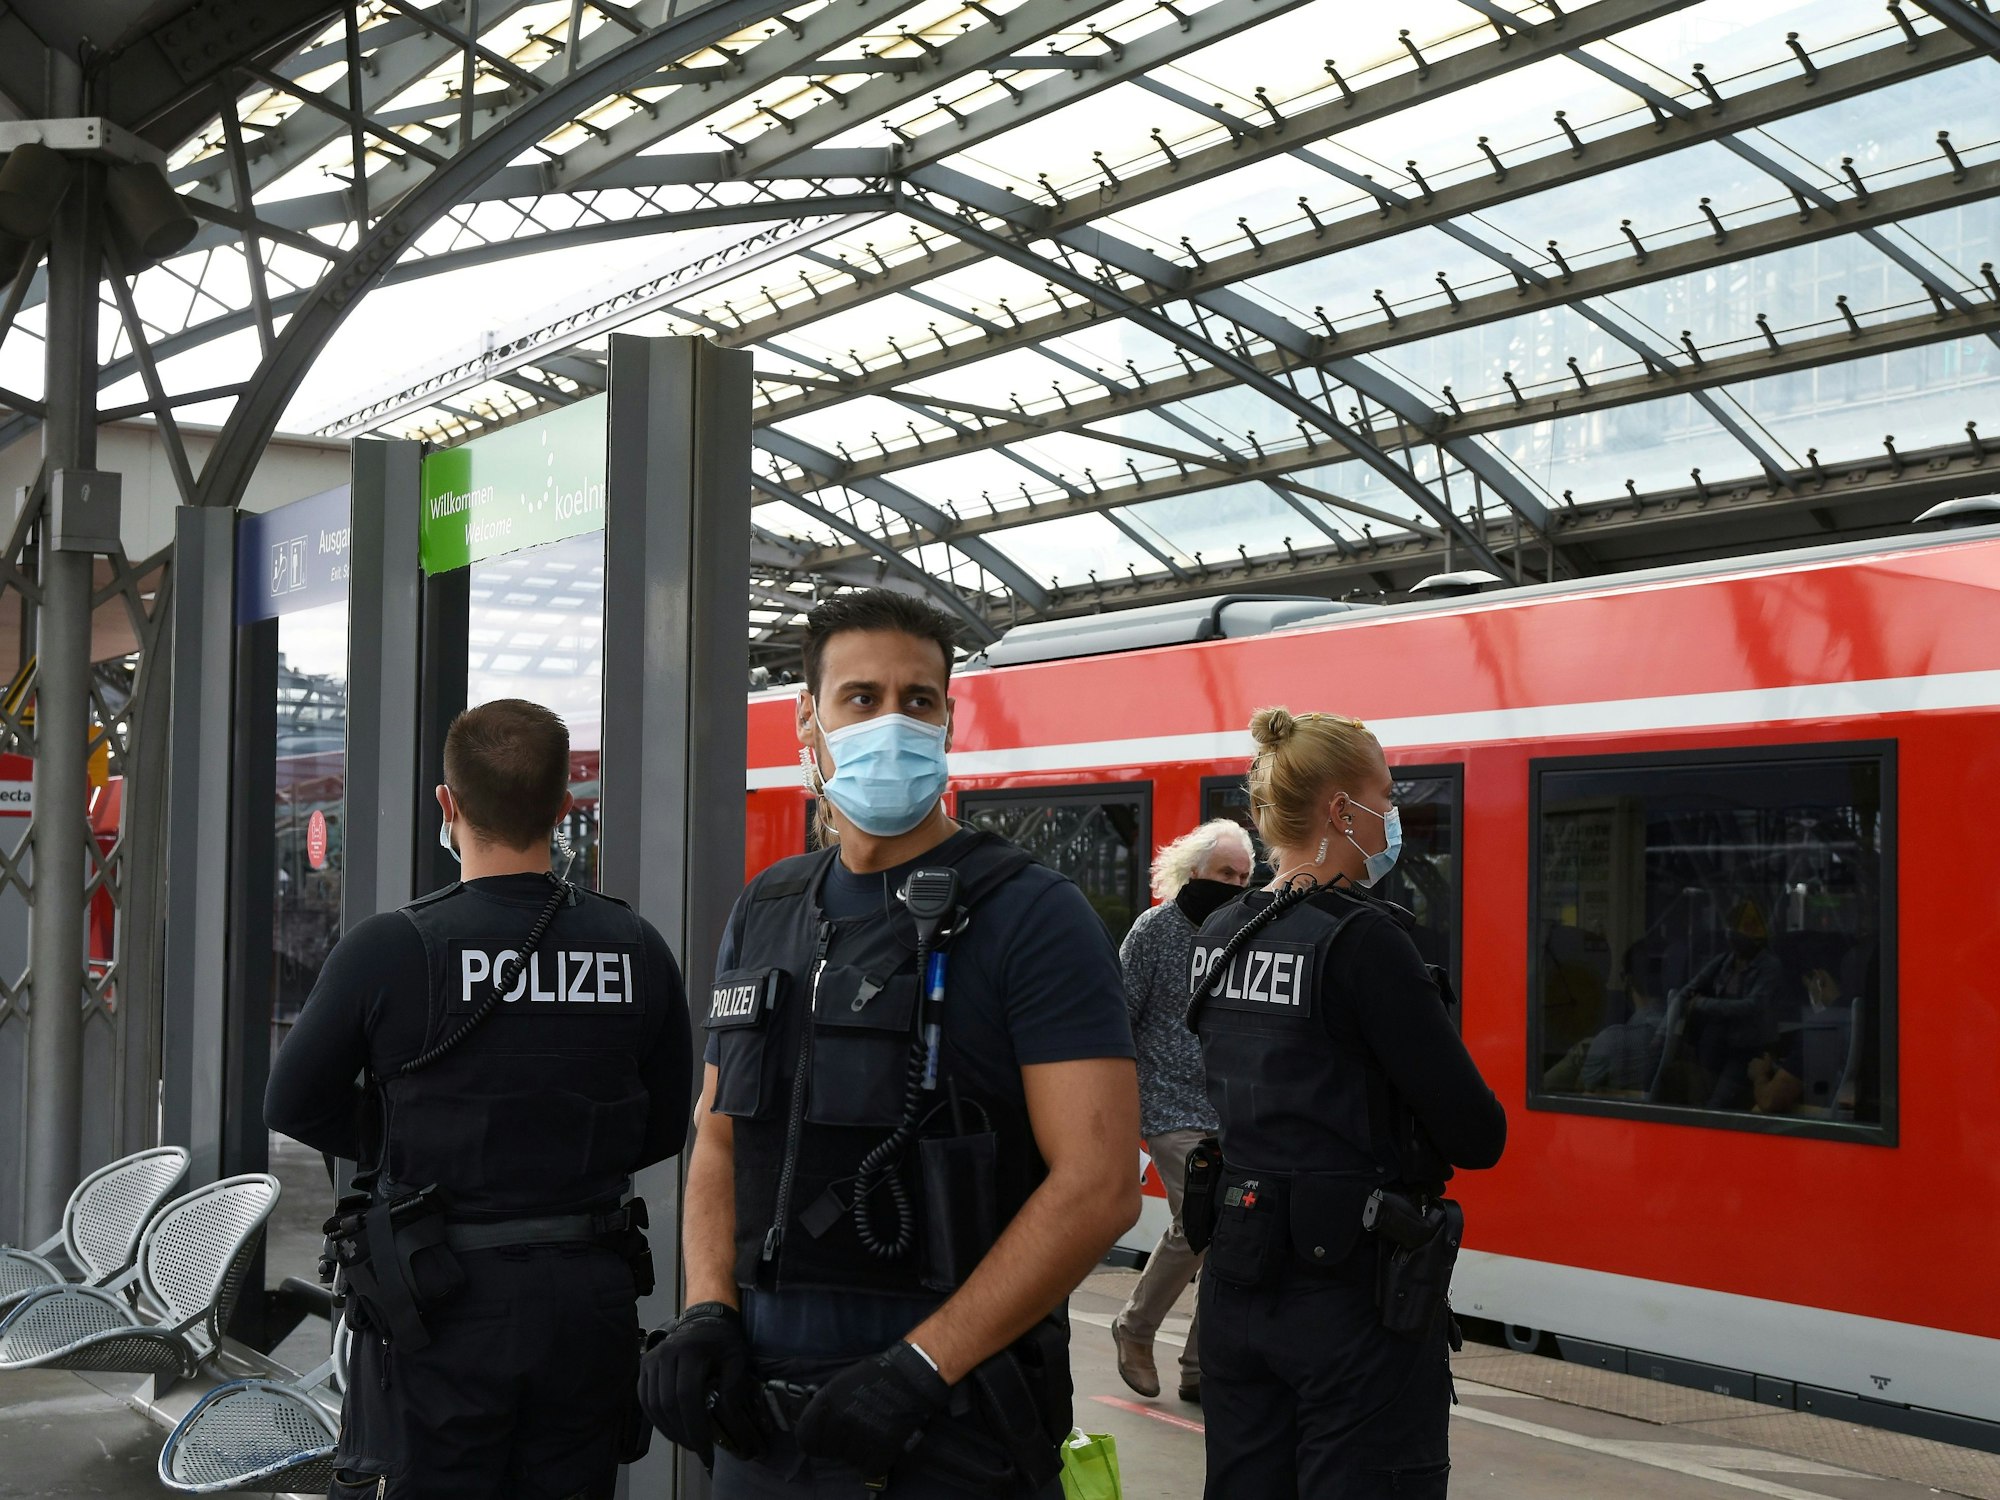 
Einsatzkräfte der Bundespolizei stehen am Gleis im Kölner Hauptbahnhof.